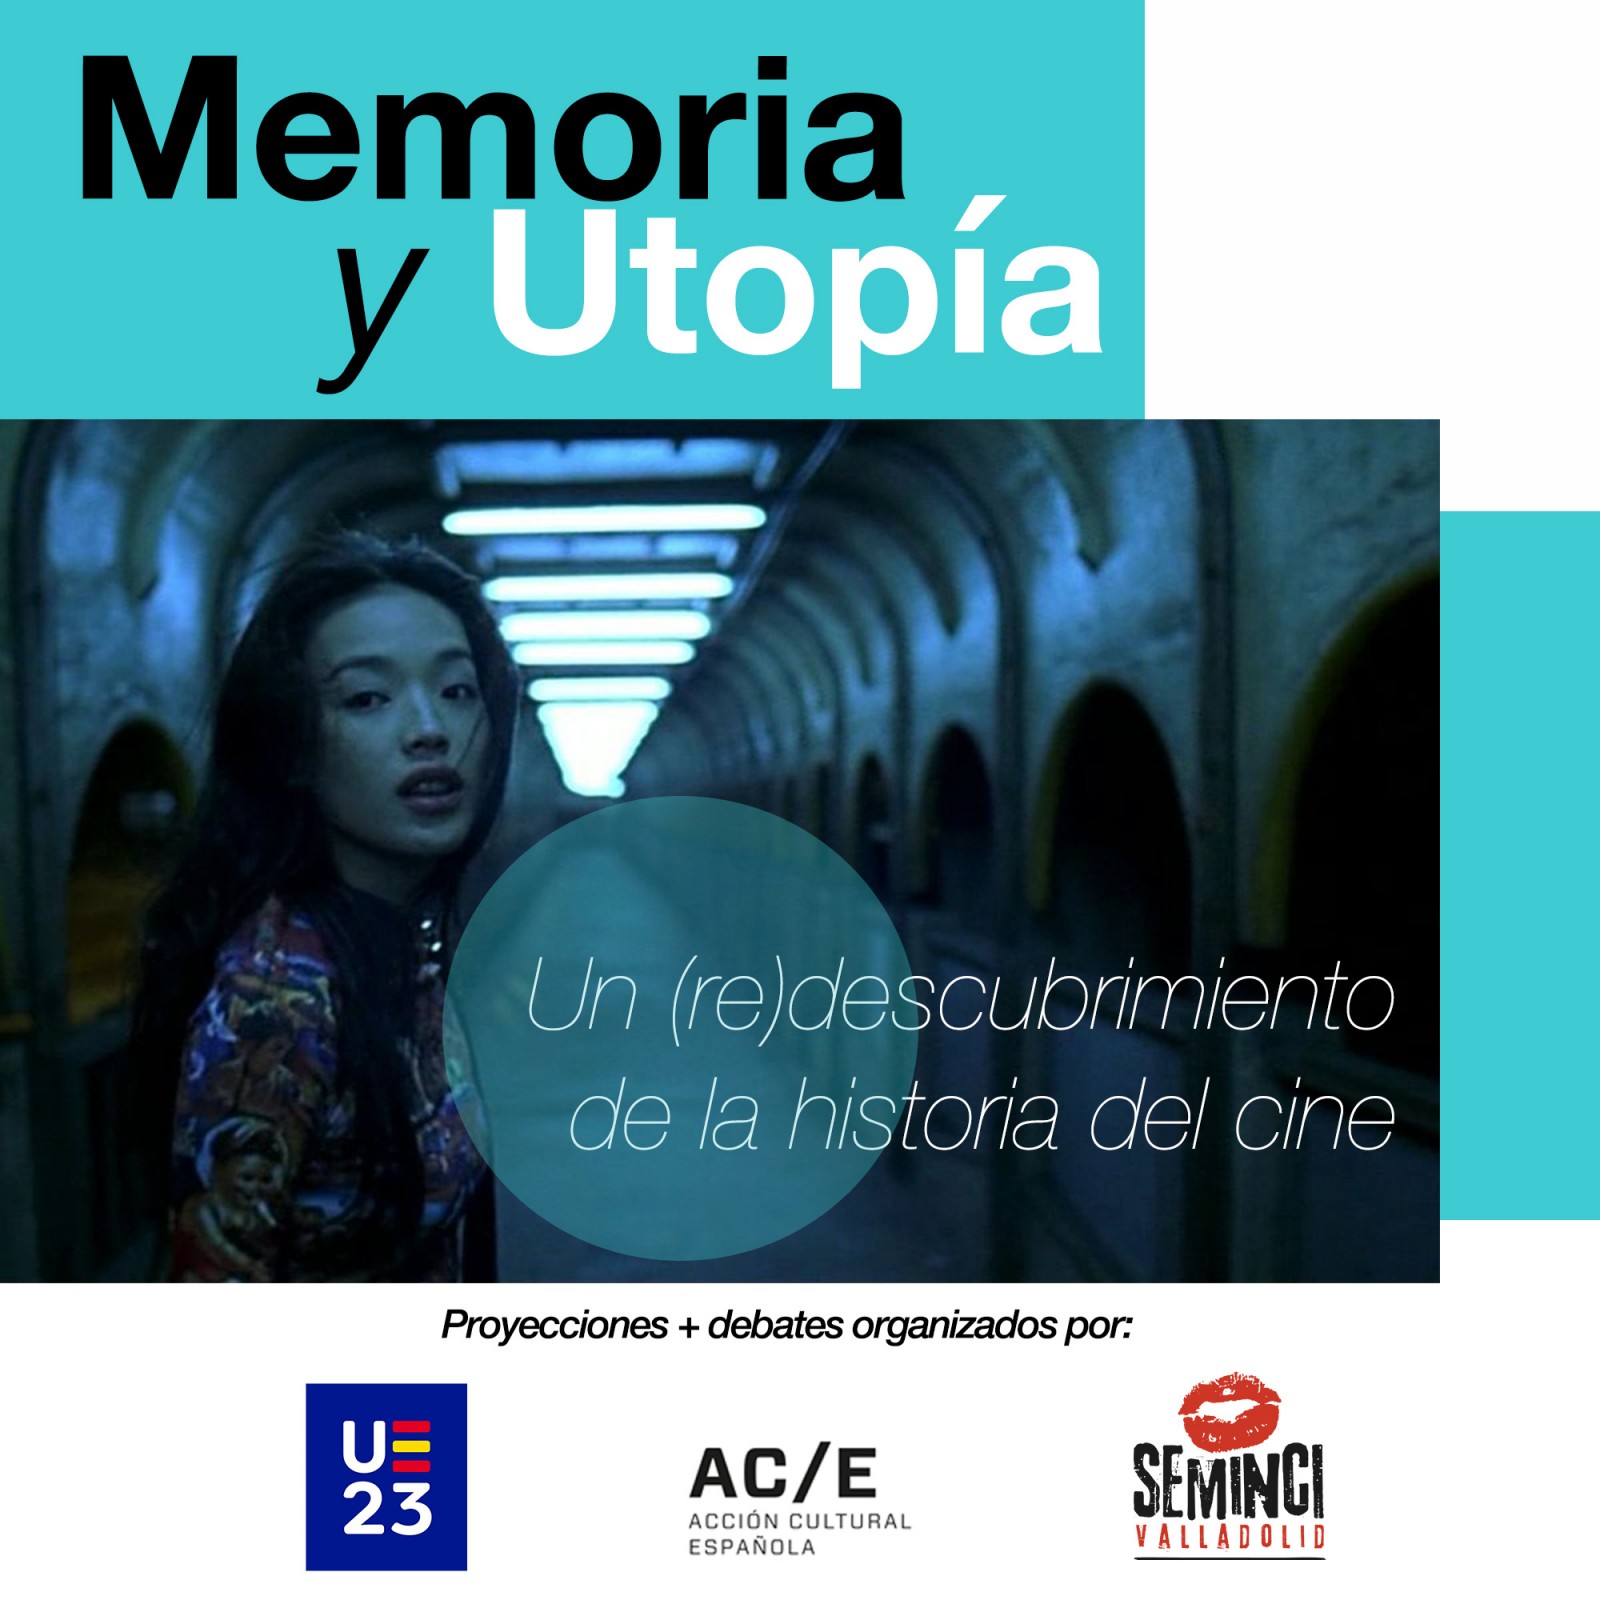 Imatge del projecte dedicat a la memòria audiovisual